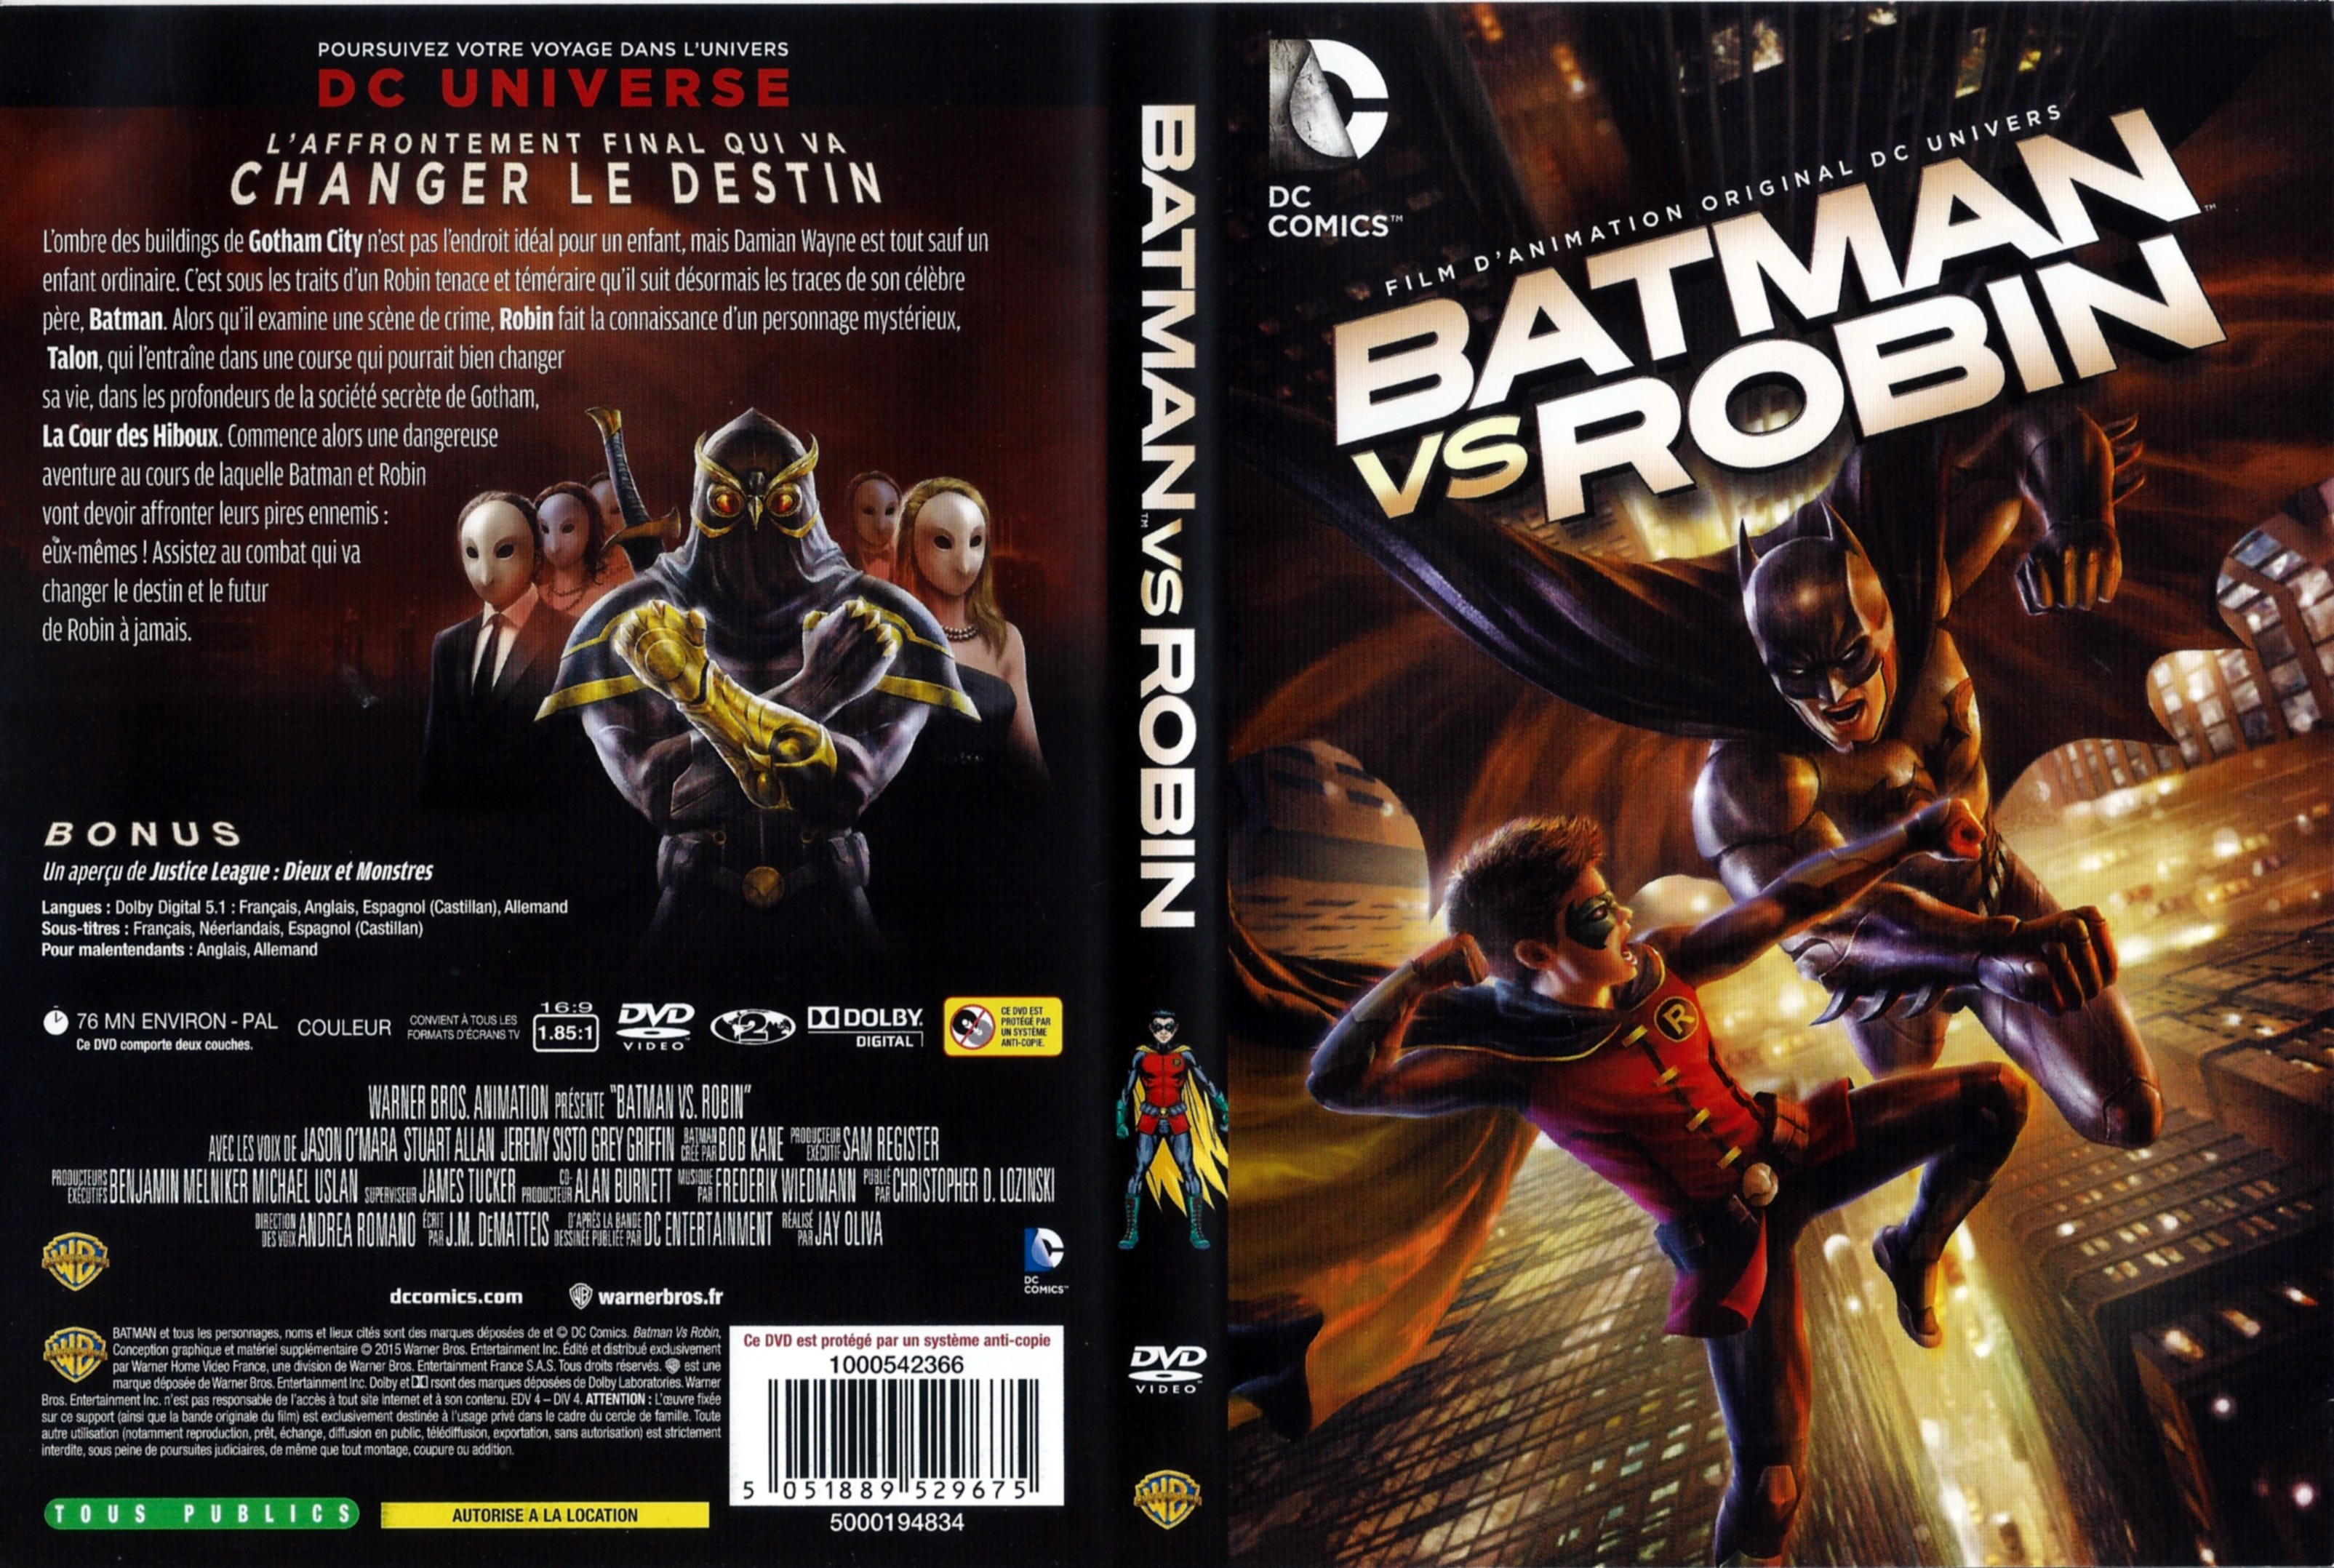 Jaquette DVD Batman VS Robin